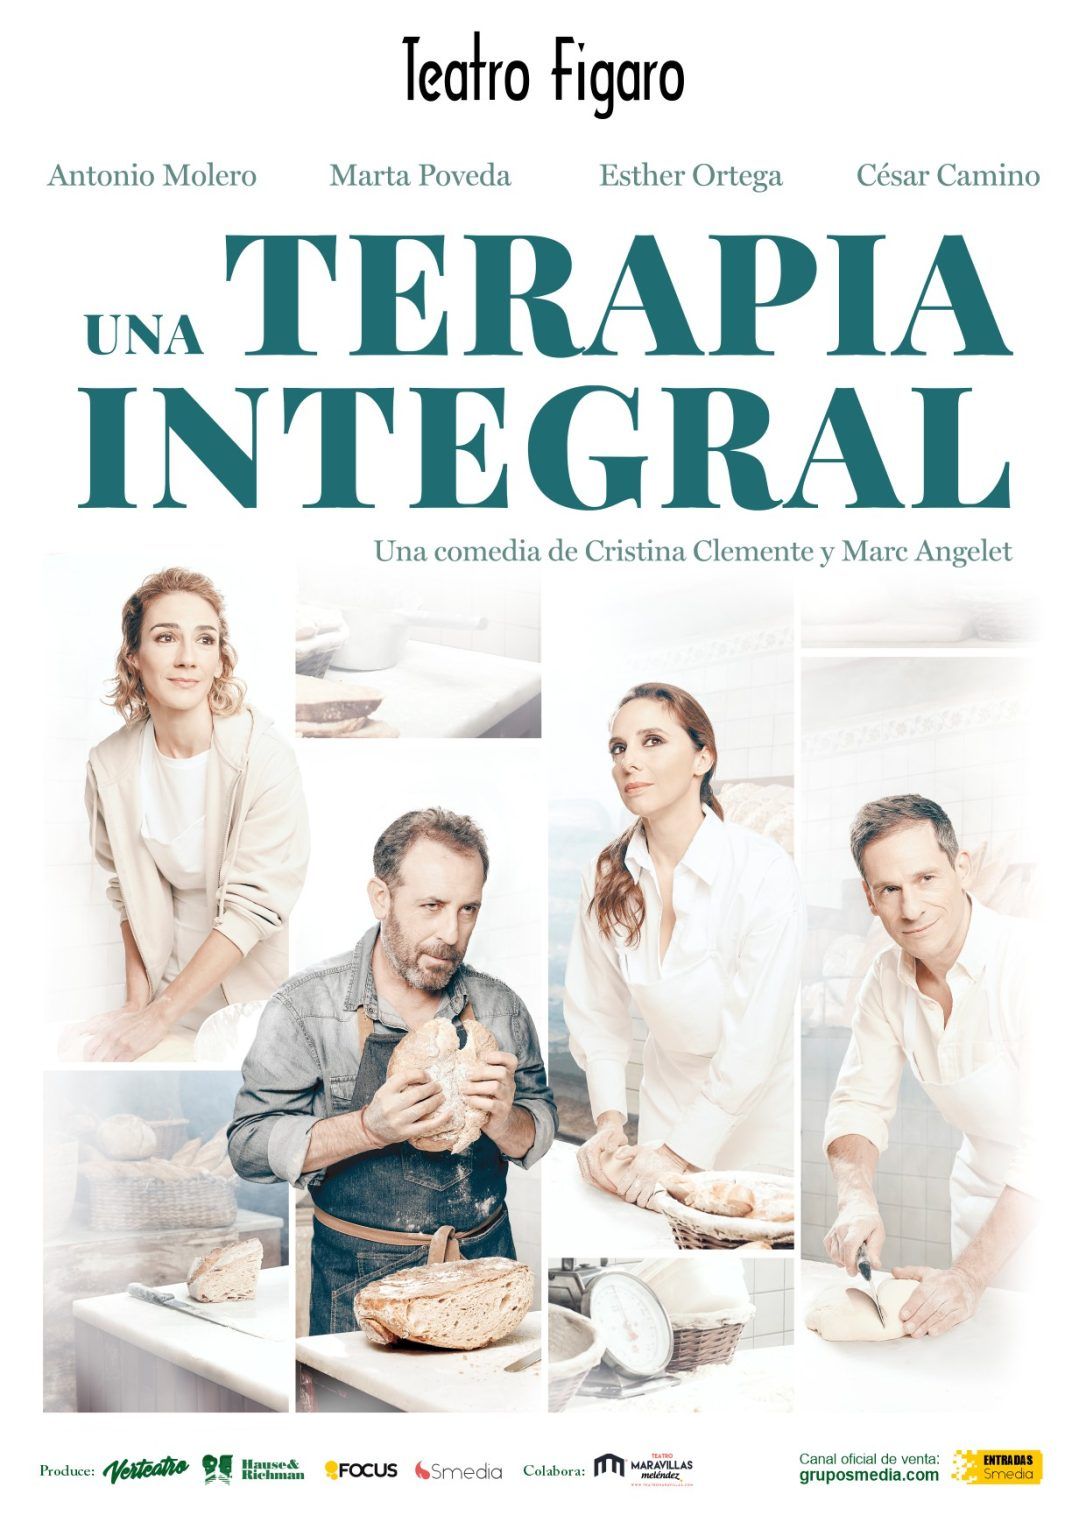 UNA TERAPIA INTEGRAL en el Teatro Fígaro - Madrid Es Teatro1